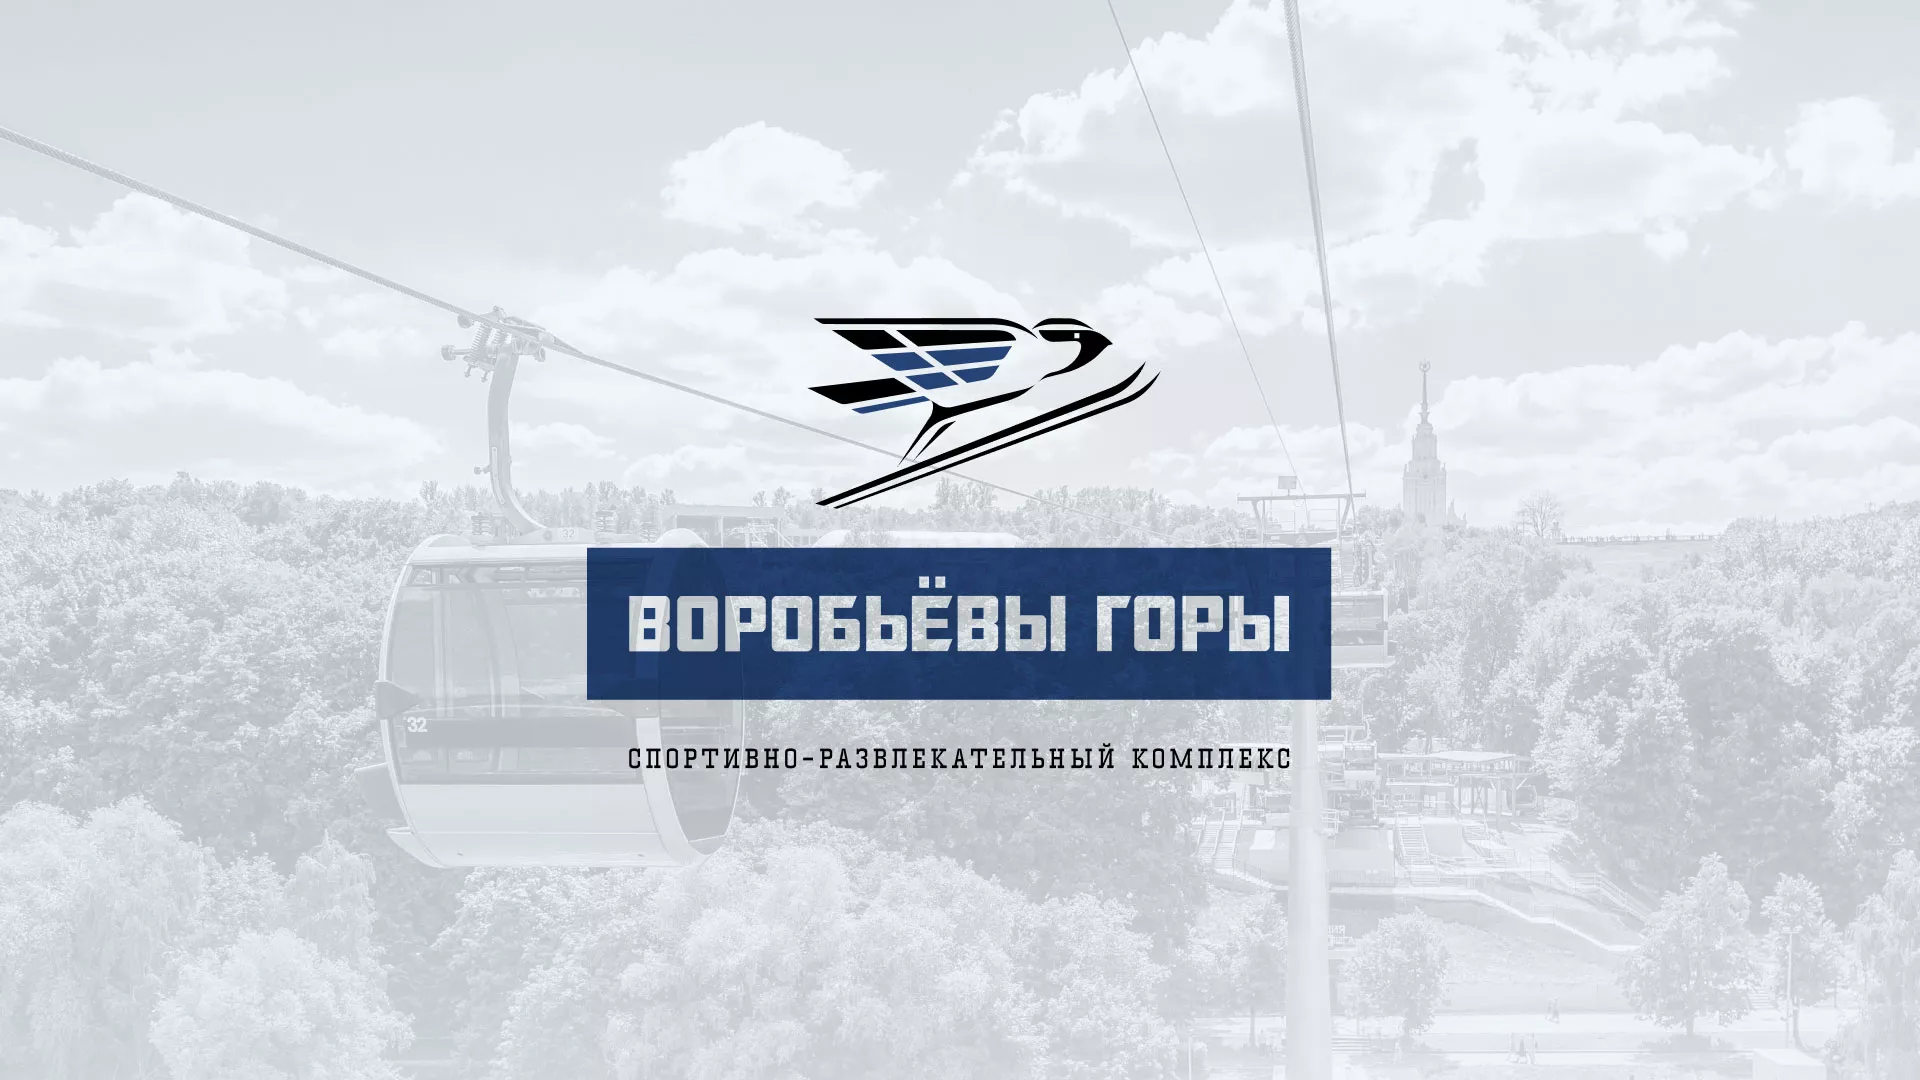 Разработка сайта в Советске для спортивно-развлекательного комплекса «Воробьёвы горы»